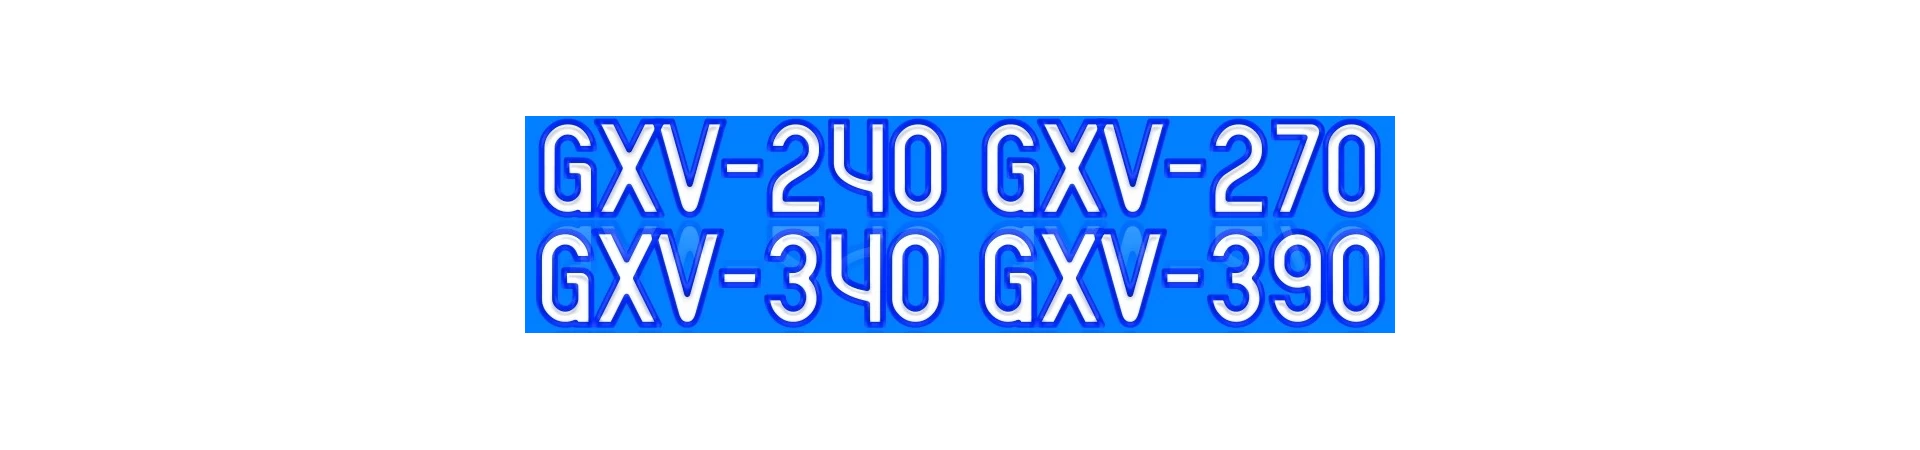 GXV240 GXV270 GXV340 GXV390